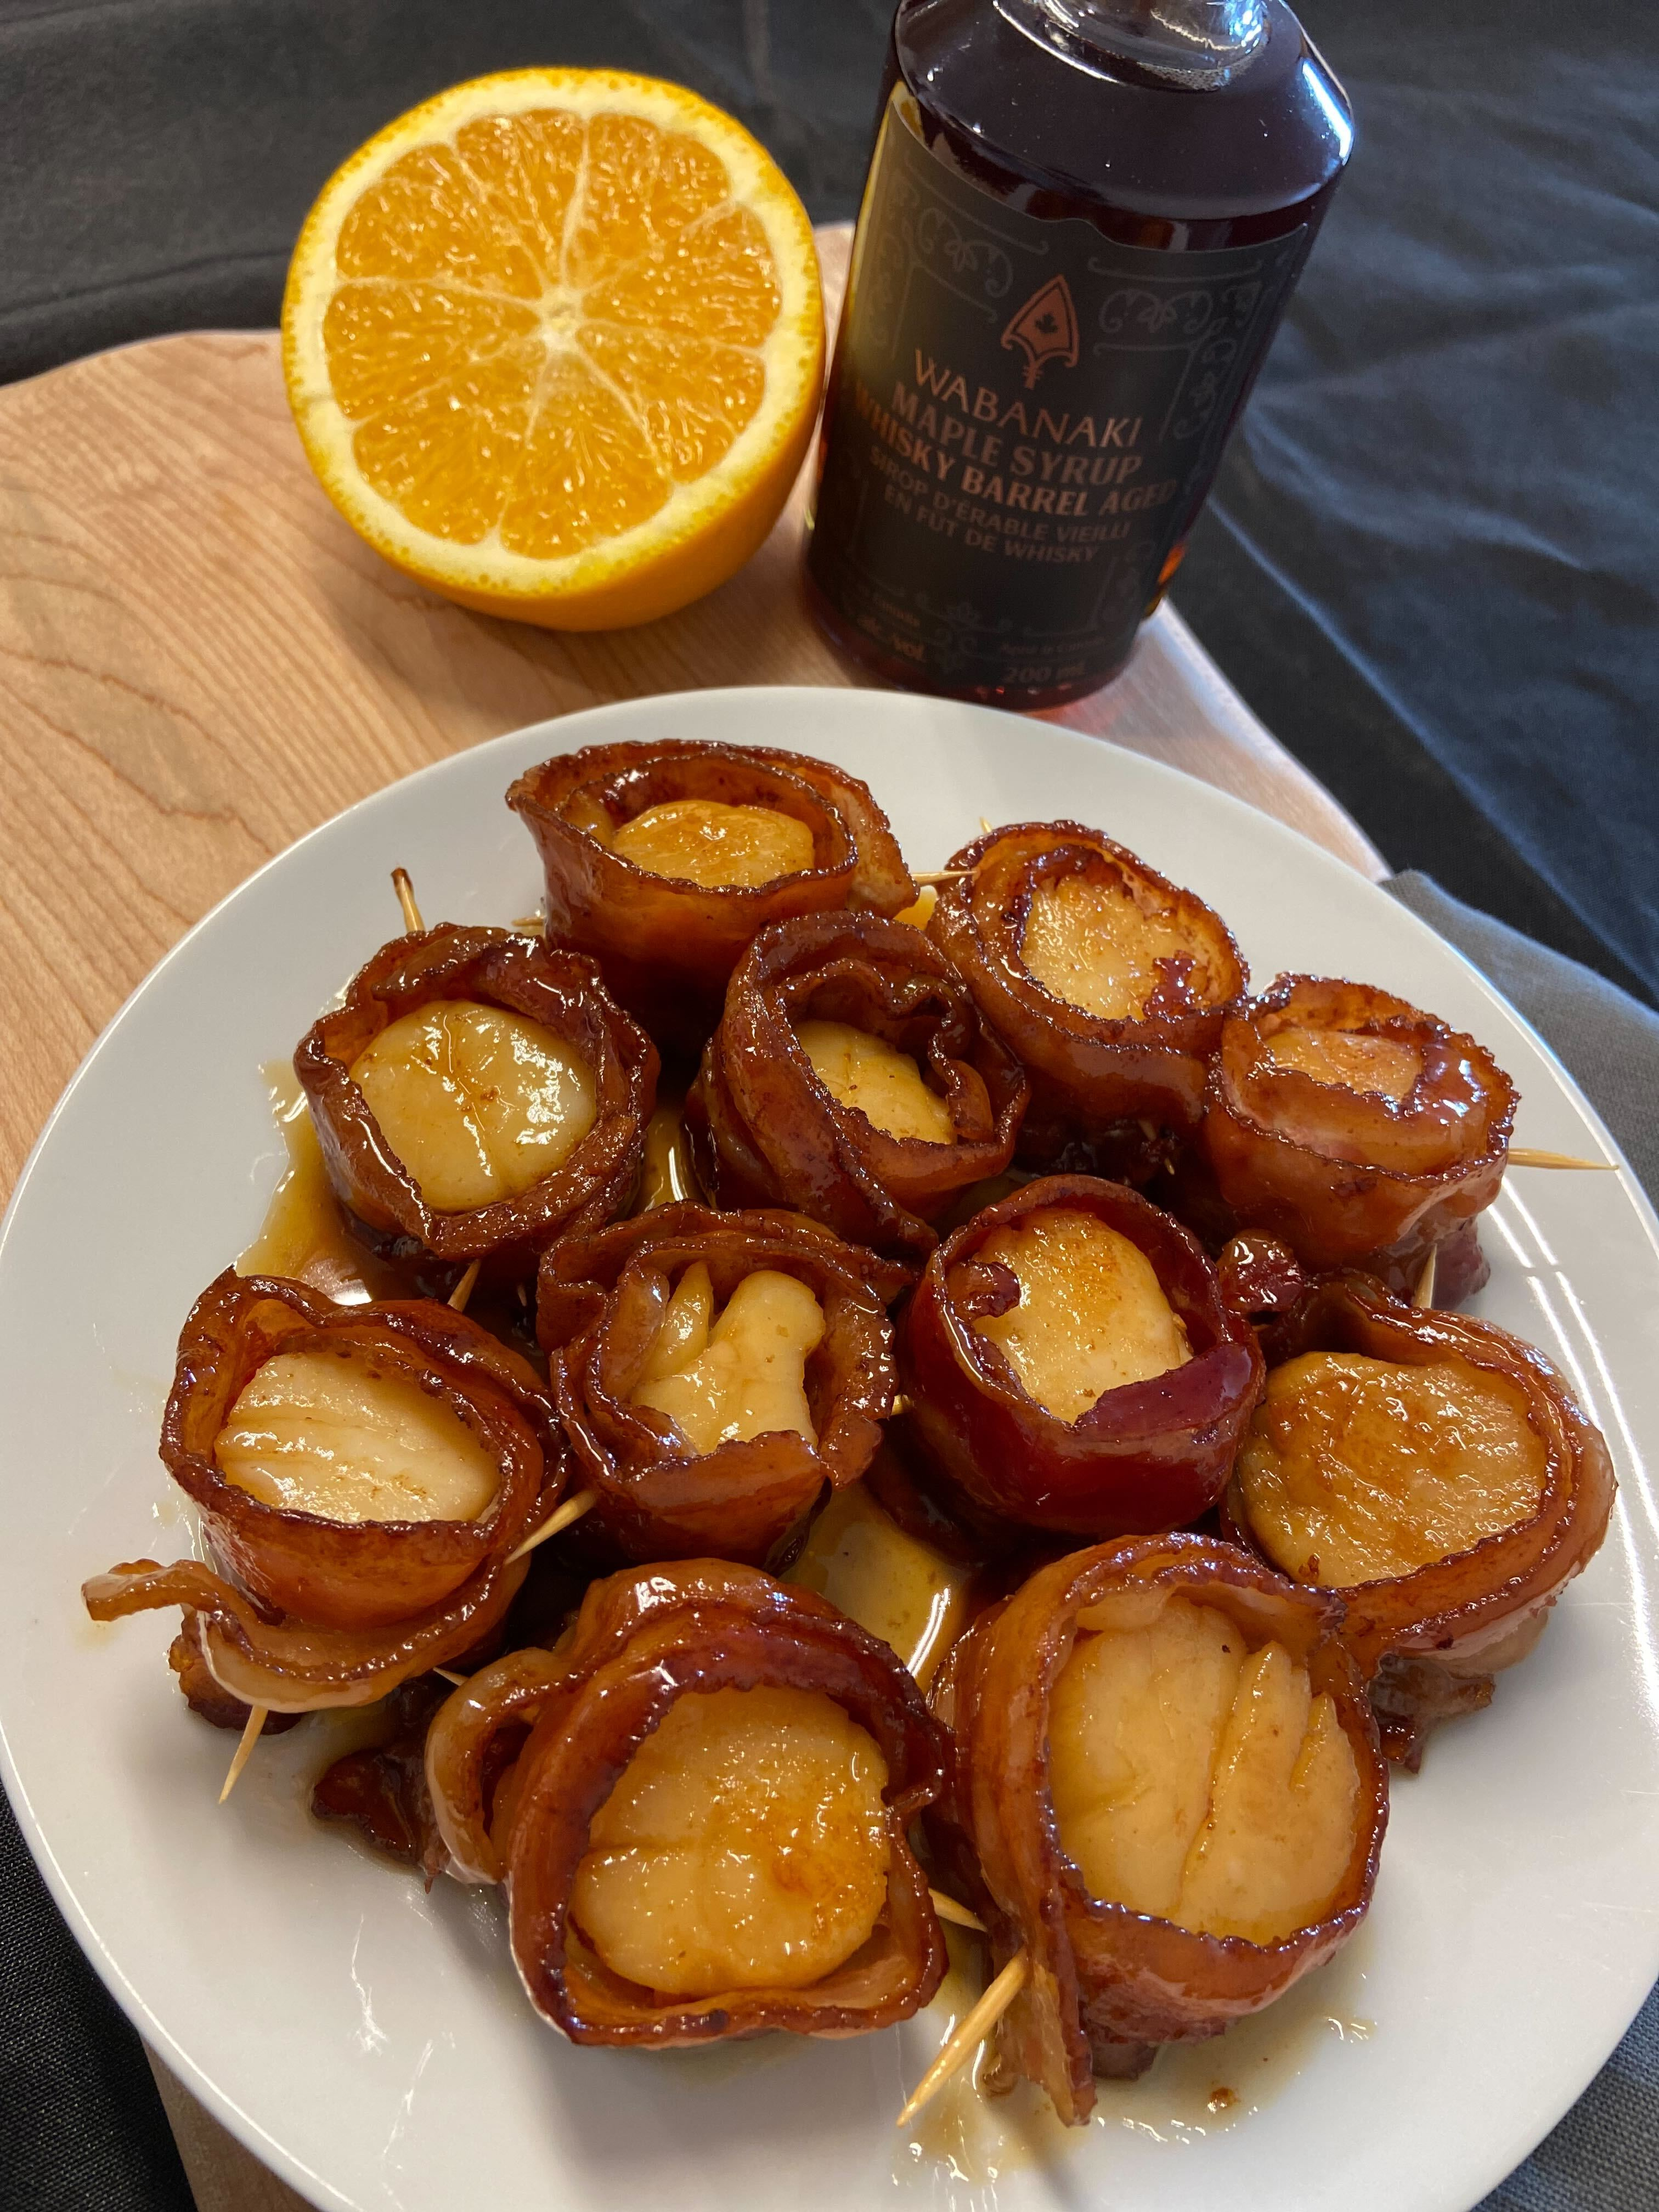 Bacon Wrapped Scallops with an Orange Maple Glaze using Wabanaki Maple Whisky Barrel Aged 